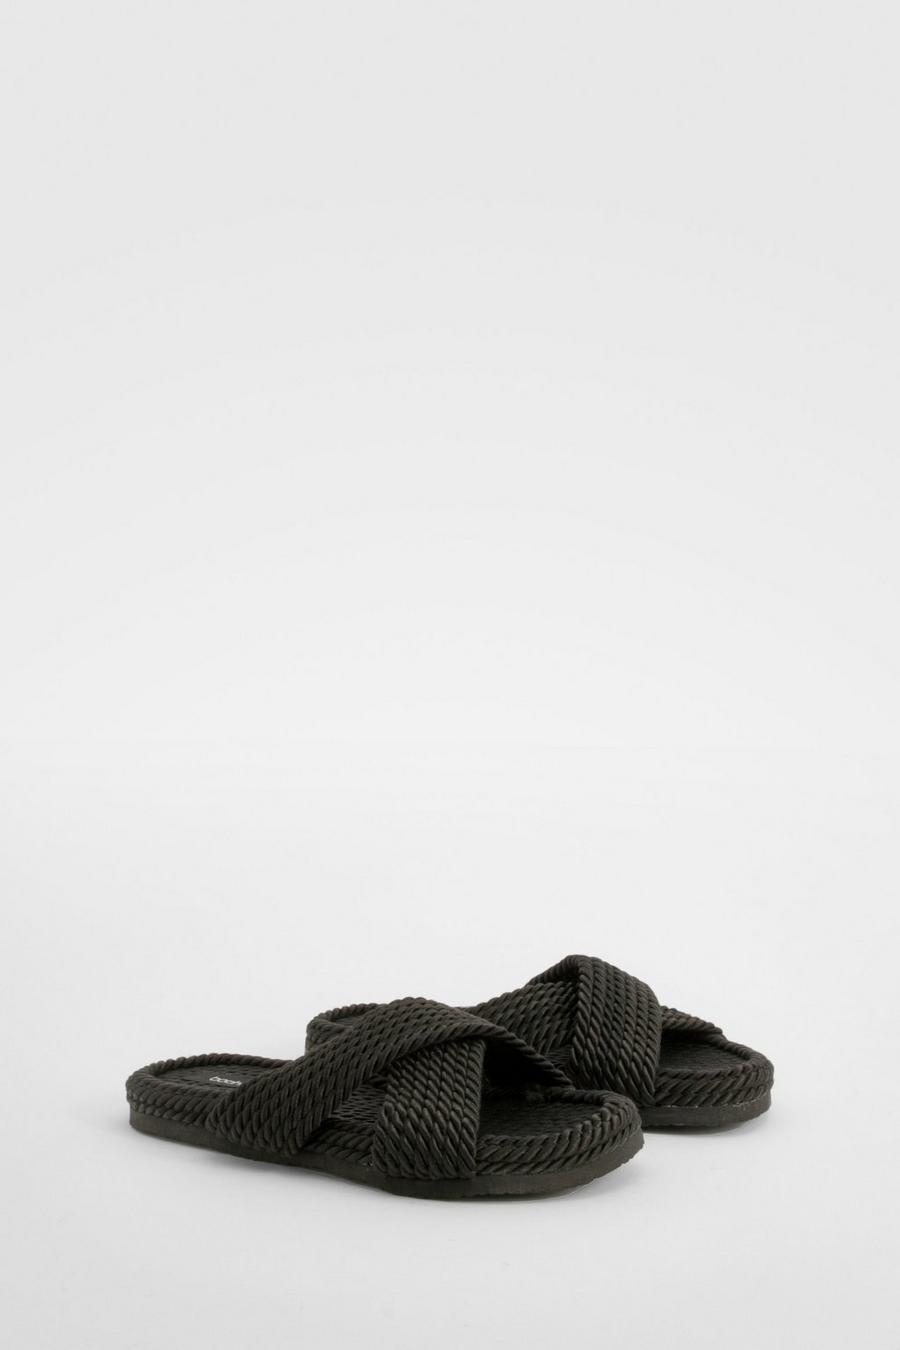 Sandalias cruzadas estilo cordón, Black